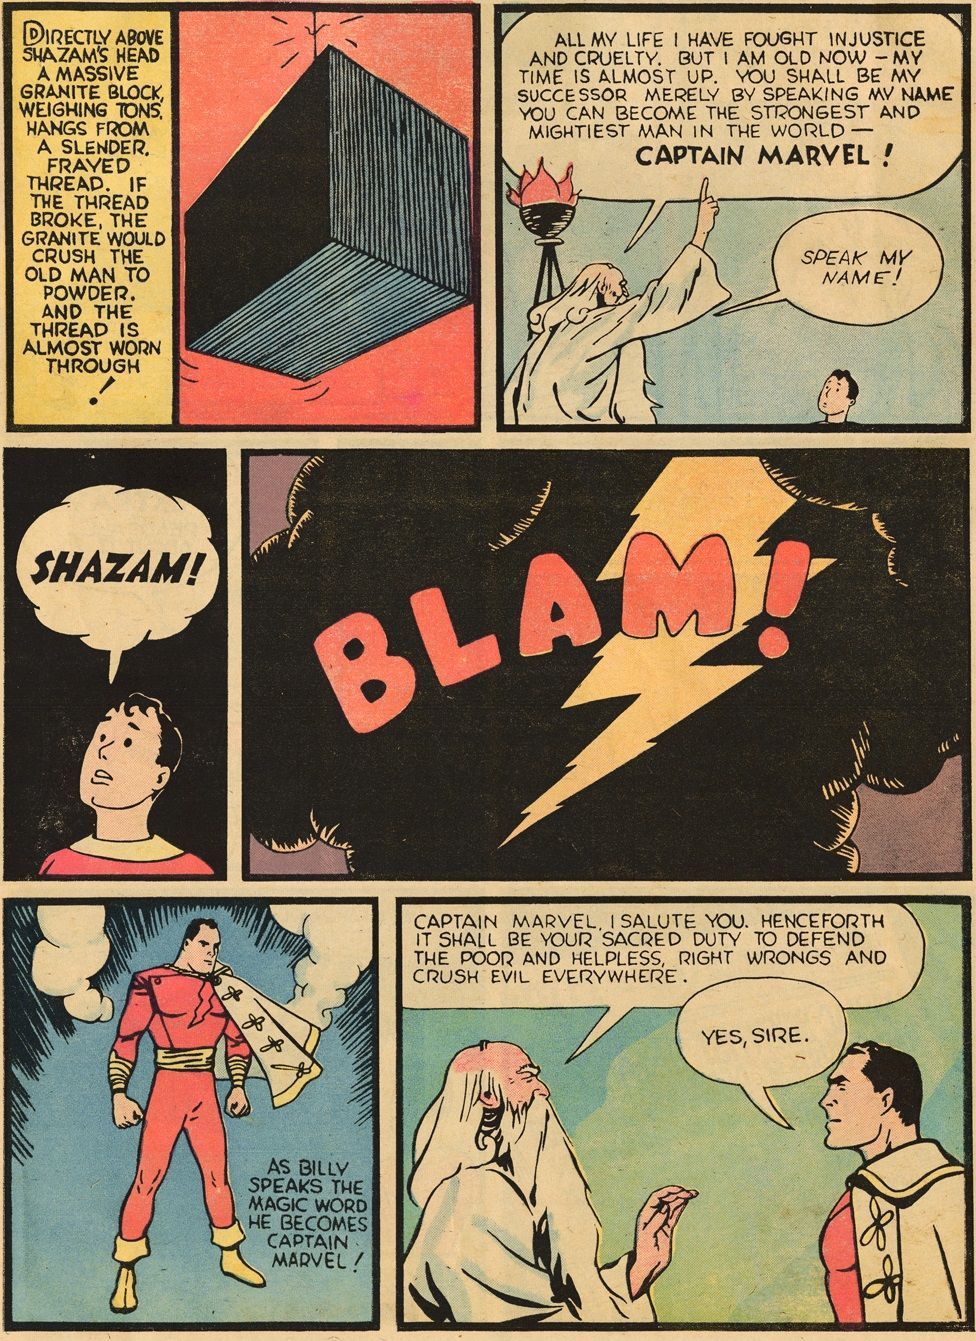 Πότε έγιναν οι ίδιοι οι Shazam και Billy Batson;